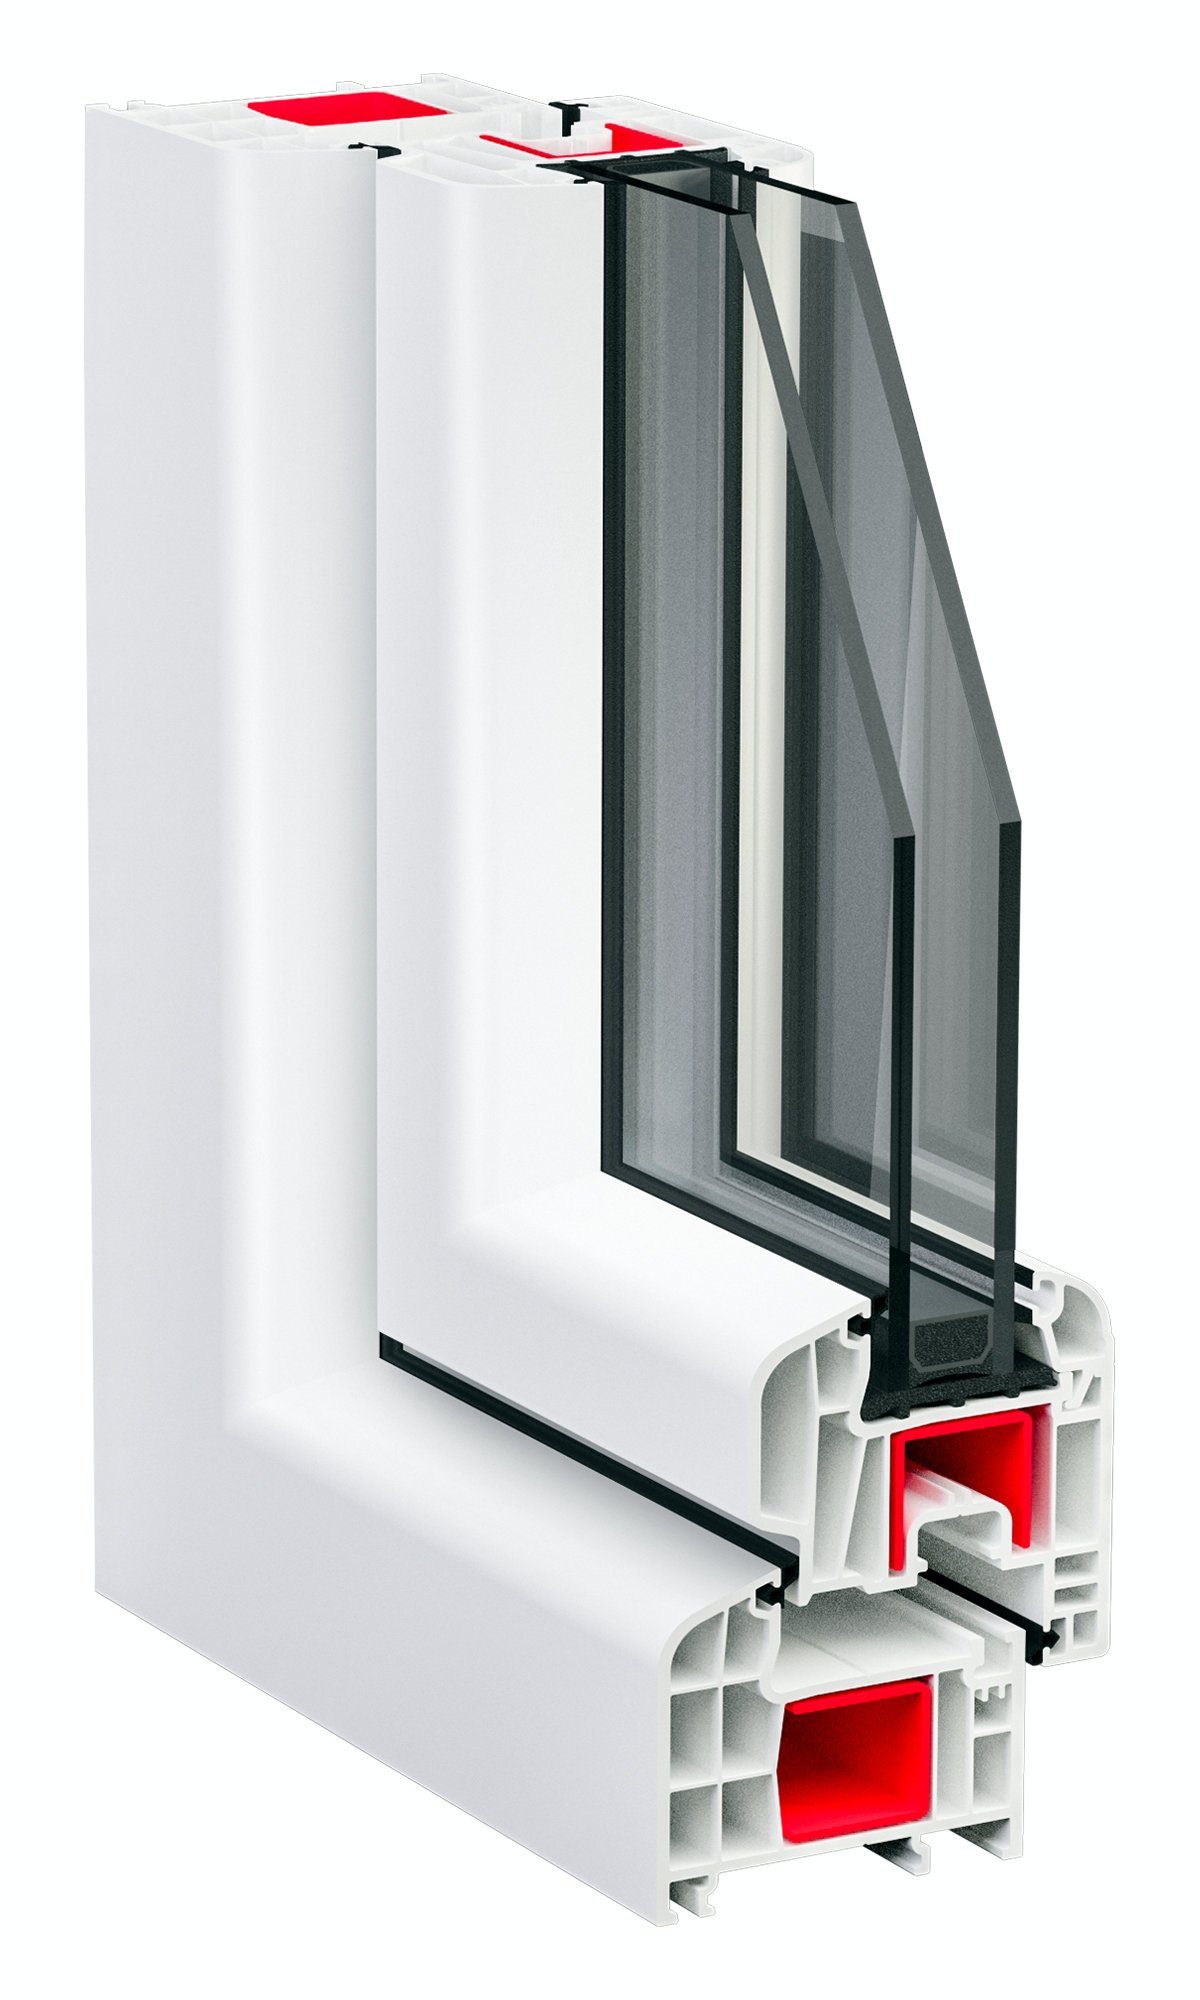 SN DECO Kellerfenster mm außen 5-Kammer-Profil Profil, Hochwertiges 1 weiß, 600x600, anthrazit/innen (Set), Sicherheitsbeschlag, Flügel, RC2 70 GROUP